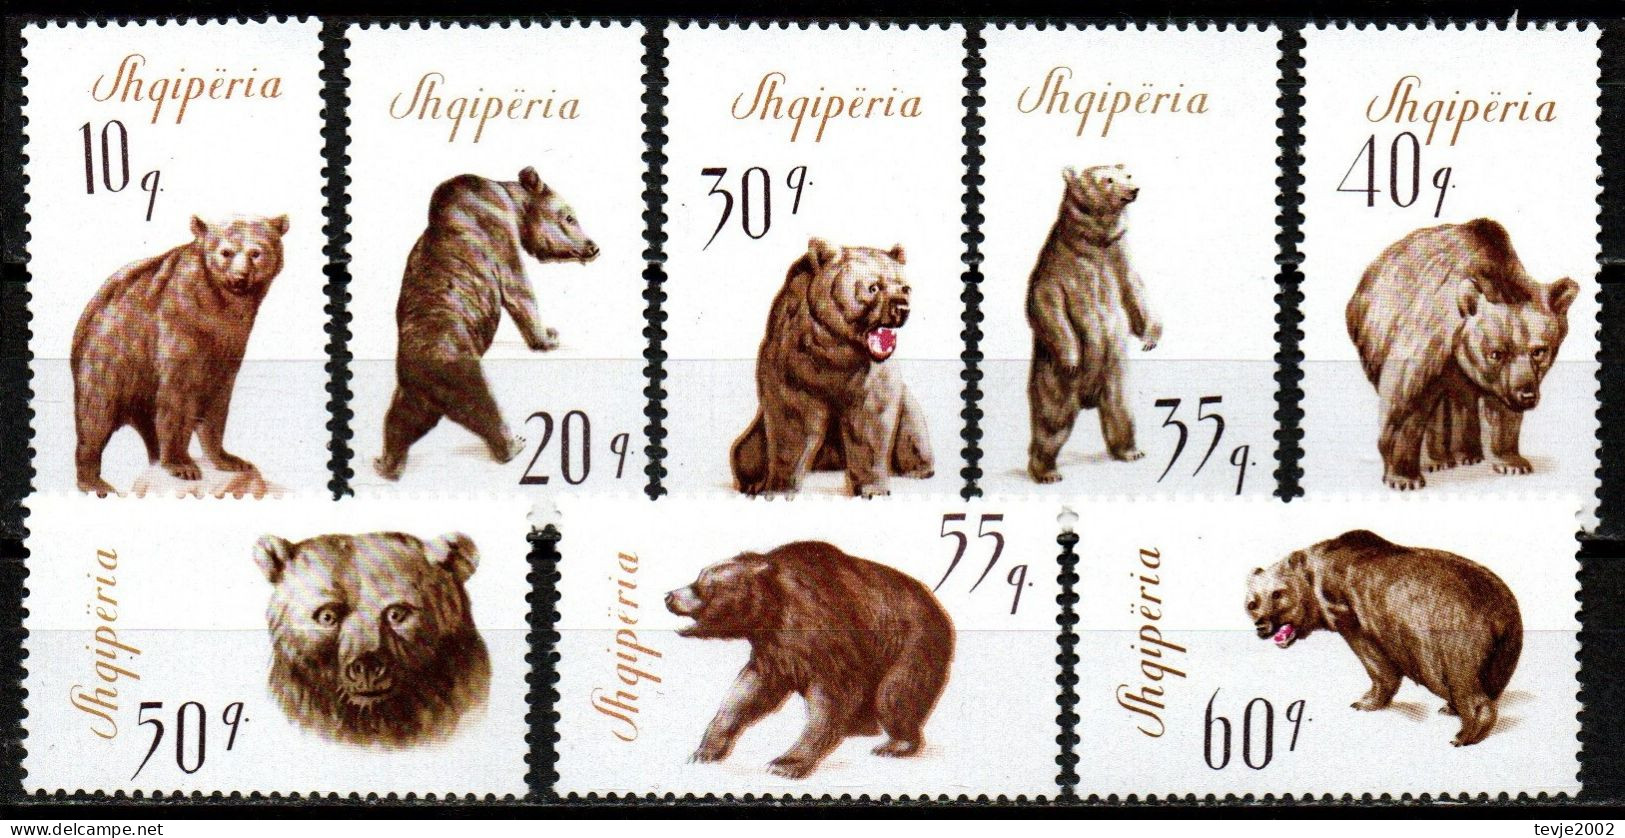 Albanien 1965 - Mi.Nr. 1010 - 1017 - Postfrisch MNH - Tiere Animals Bären Bears - Ours